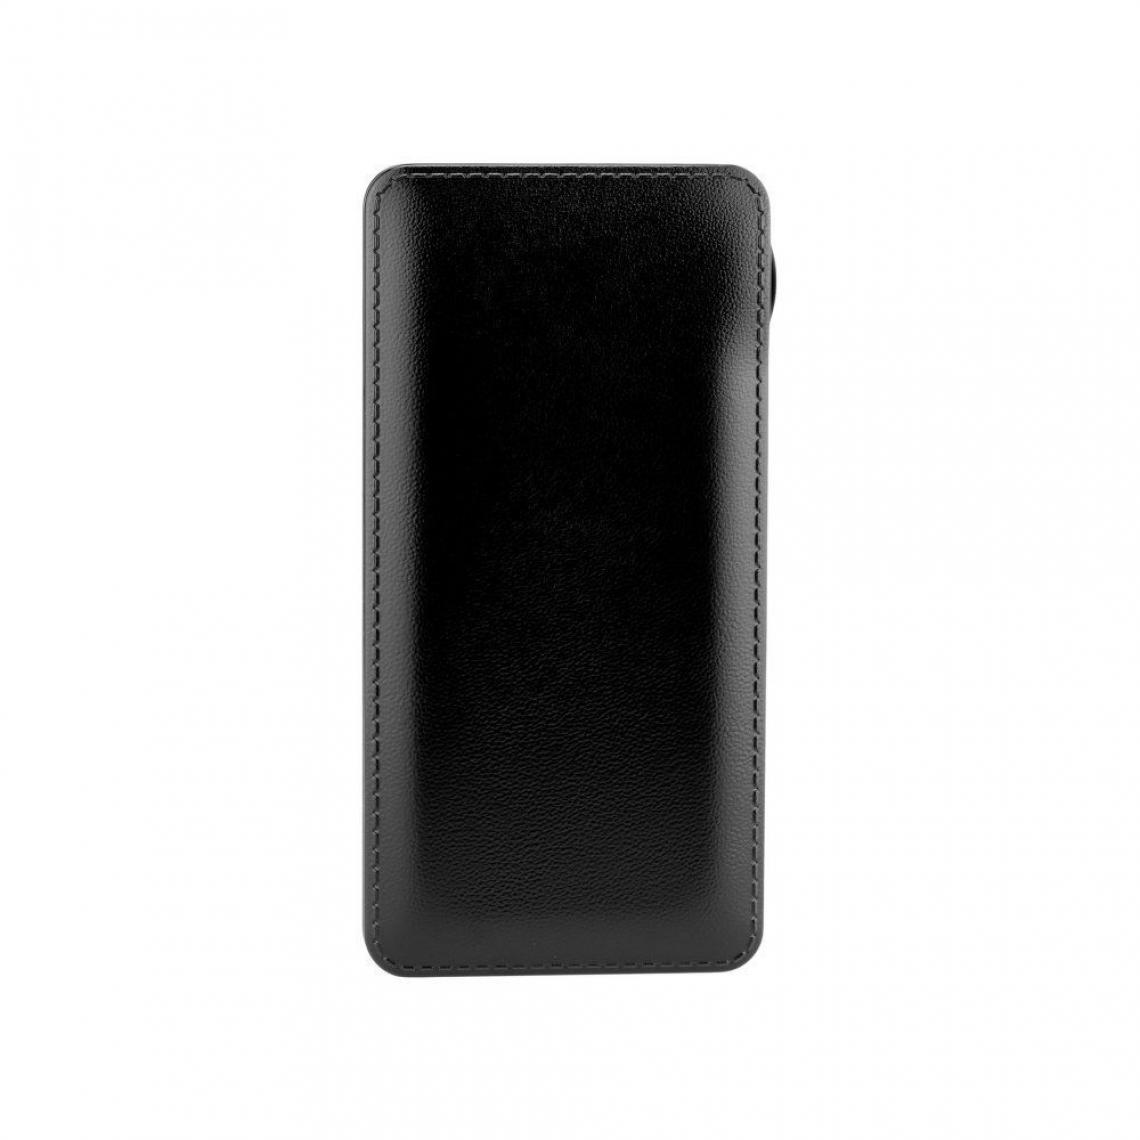 Ozzzo - Chargeur batterie externe 30000 mAh powerbank ozzzo noir pour SAMSUNG s7572 Galaxy Trend Duos 2 - Autres accessoires smartphone